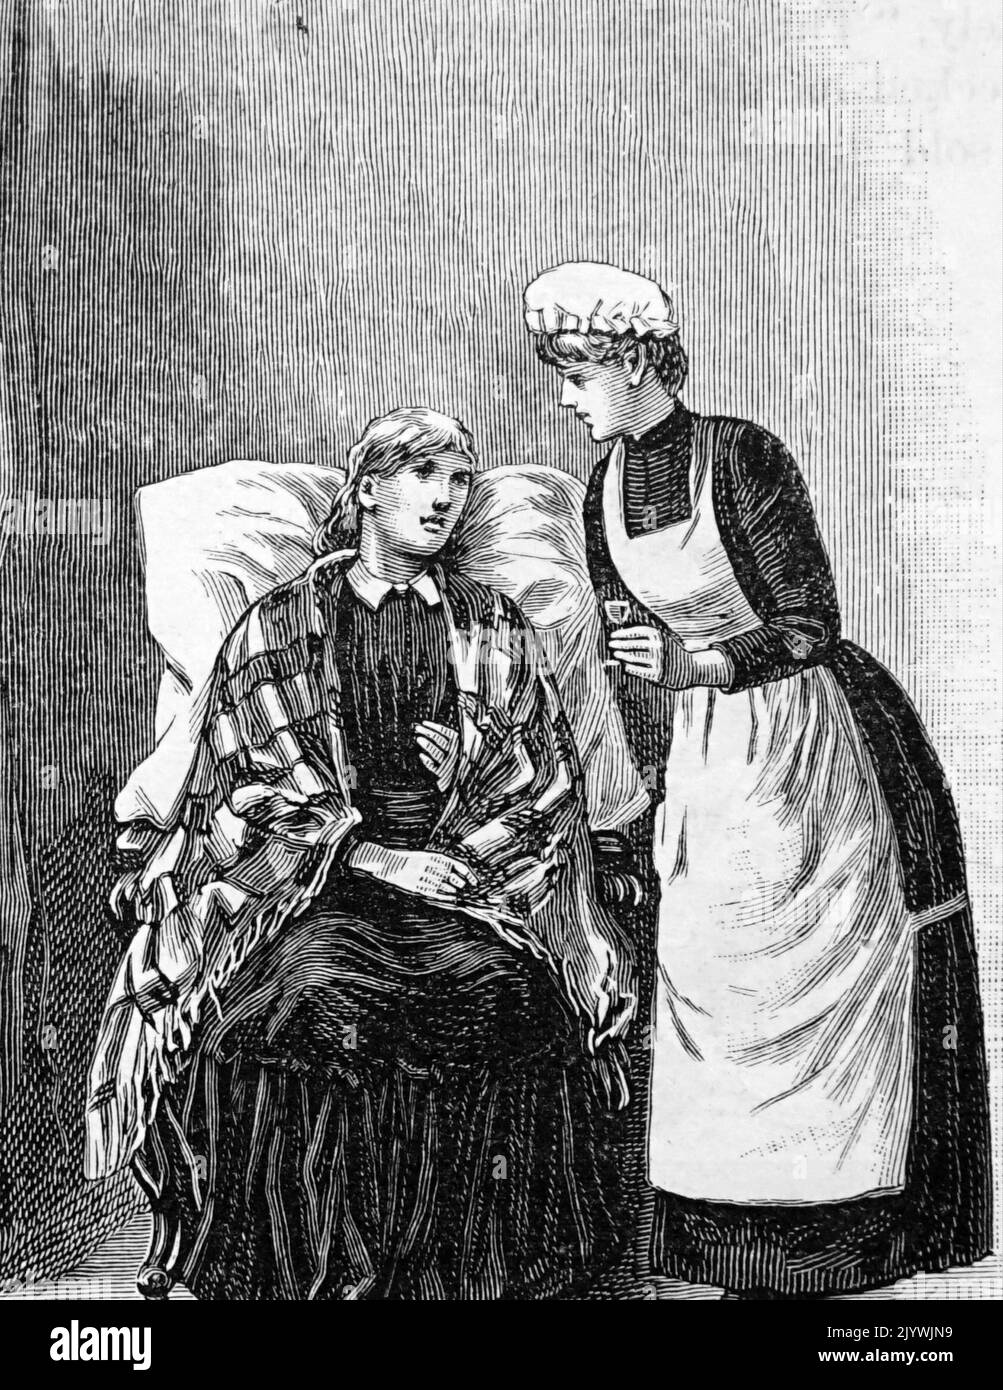 Abbildung einer Szene in einer Krankenstation, in der eine Krankenschwester einer kranken Frau Medikamente gibt. Datiert aus dem 19.. Jahrhundert Stockfoto